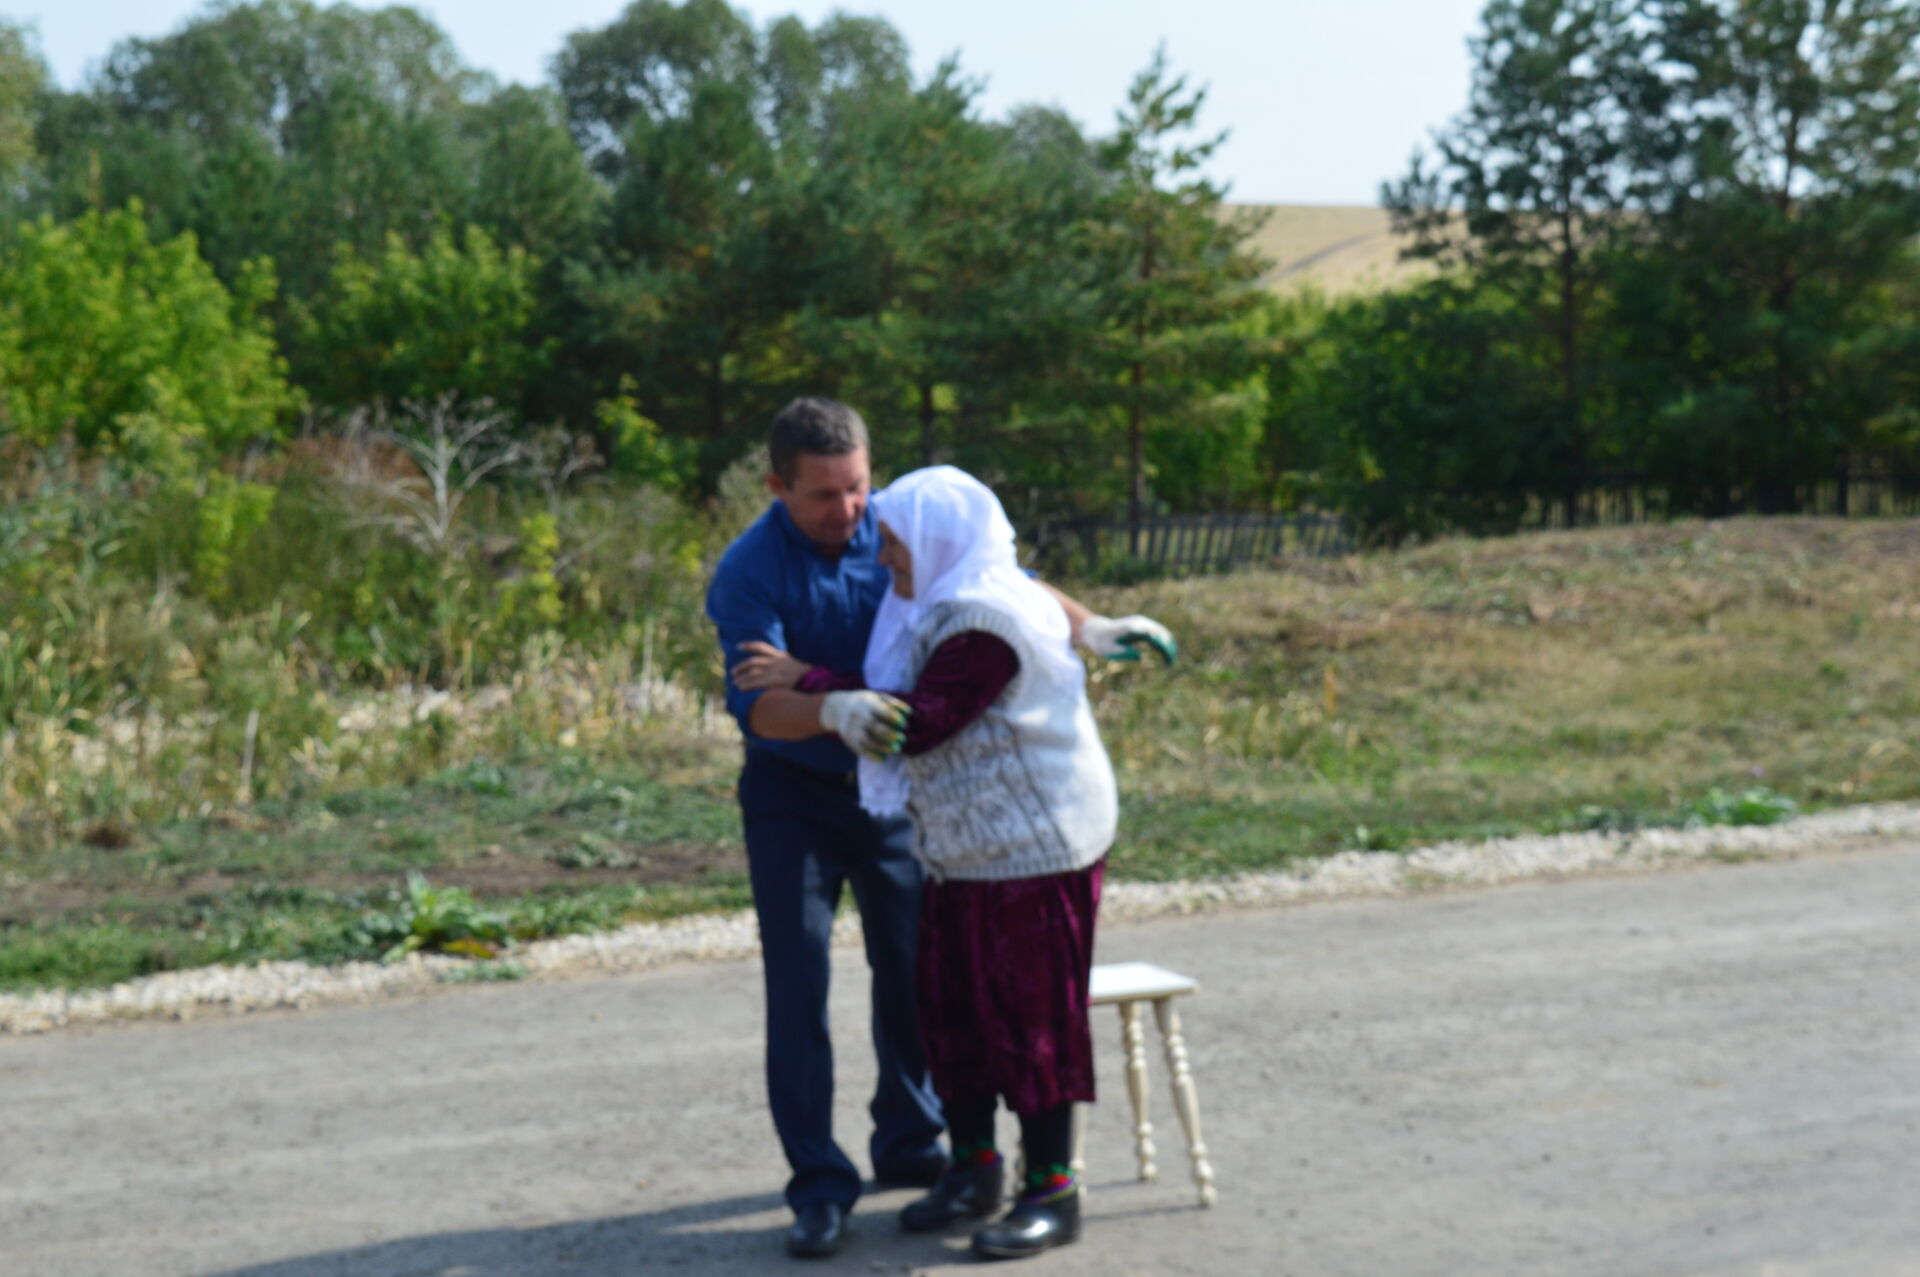 По-семейному тепло прошёл День памяти Туфана Миннуллина в его родной деревне Большое Мереткозино